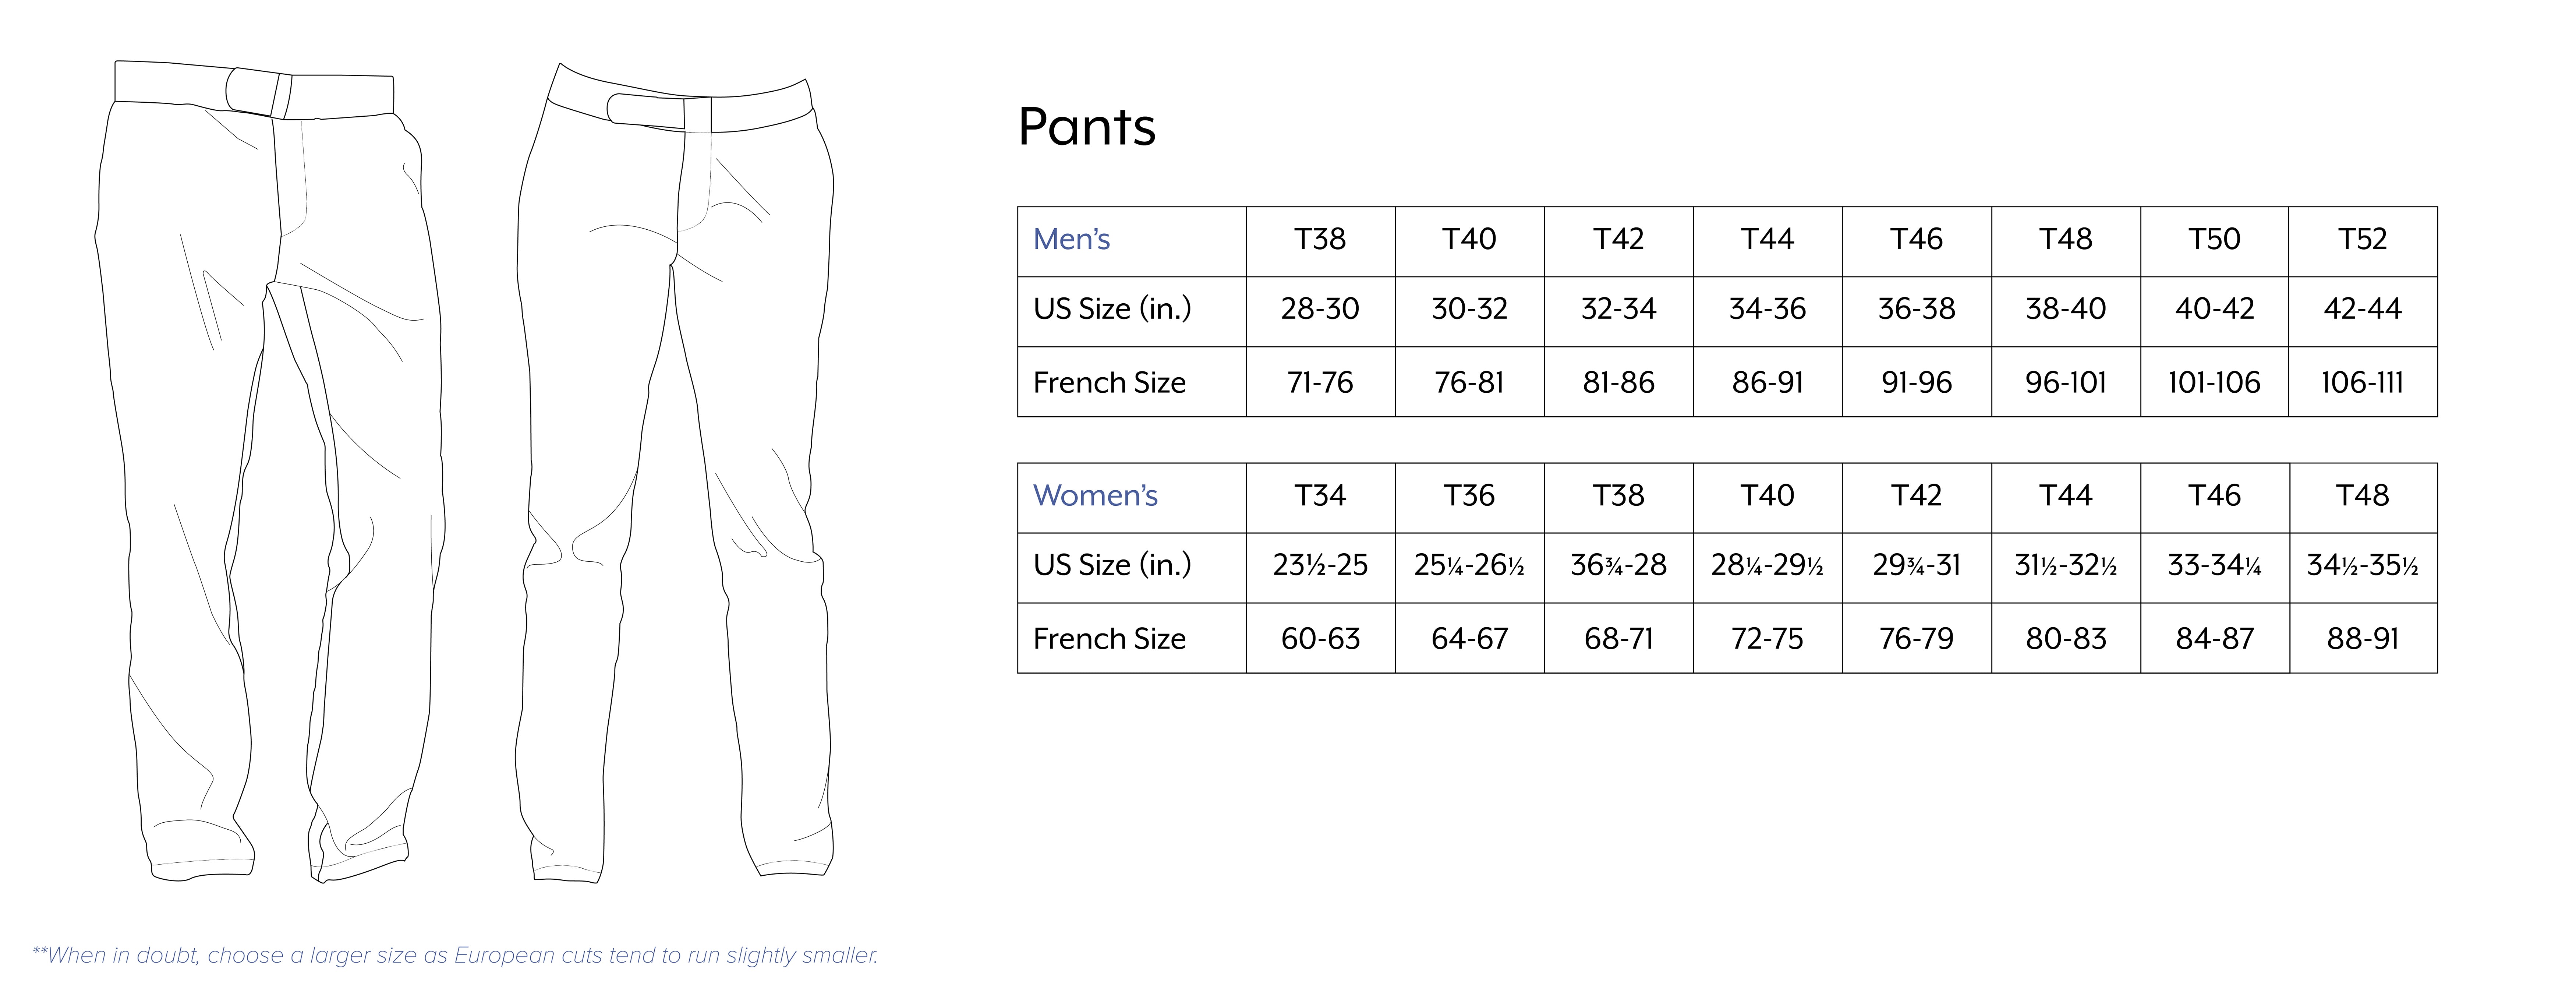 J Pants Size Chart